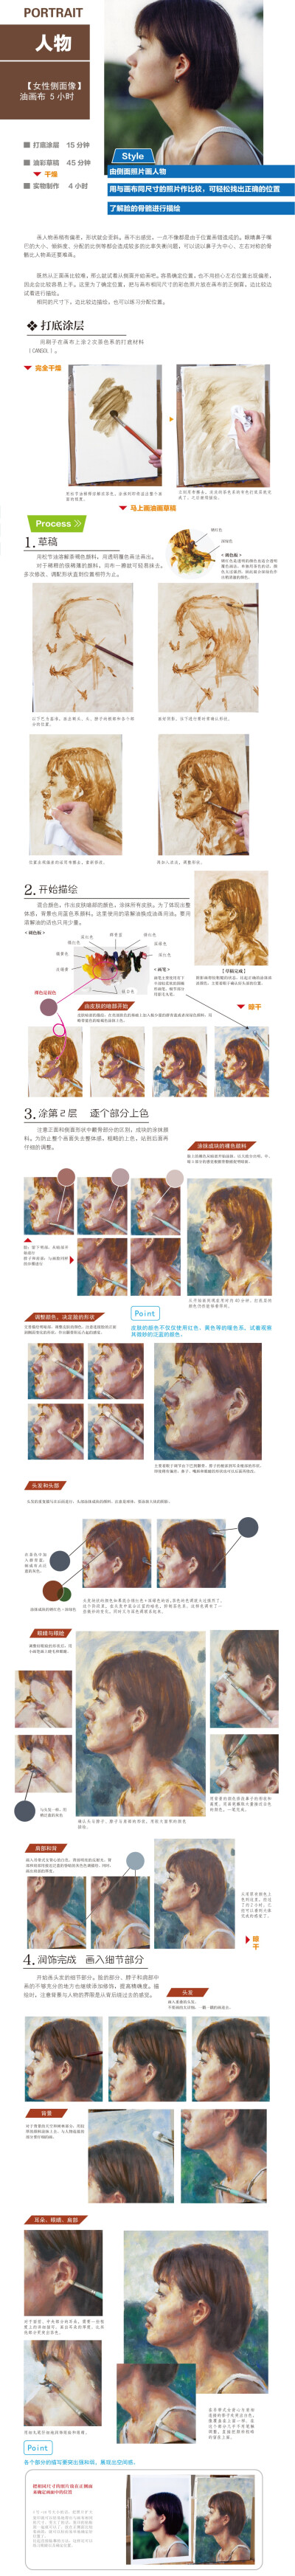 本案例摘自人民邮电出版社出版《油画绘制与风格表现技法精粹》 http://product.dangdang.com/23688999.html